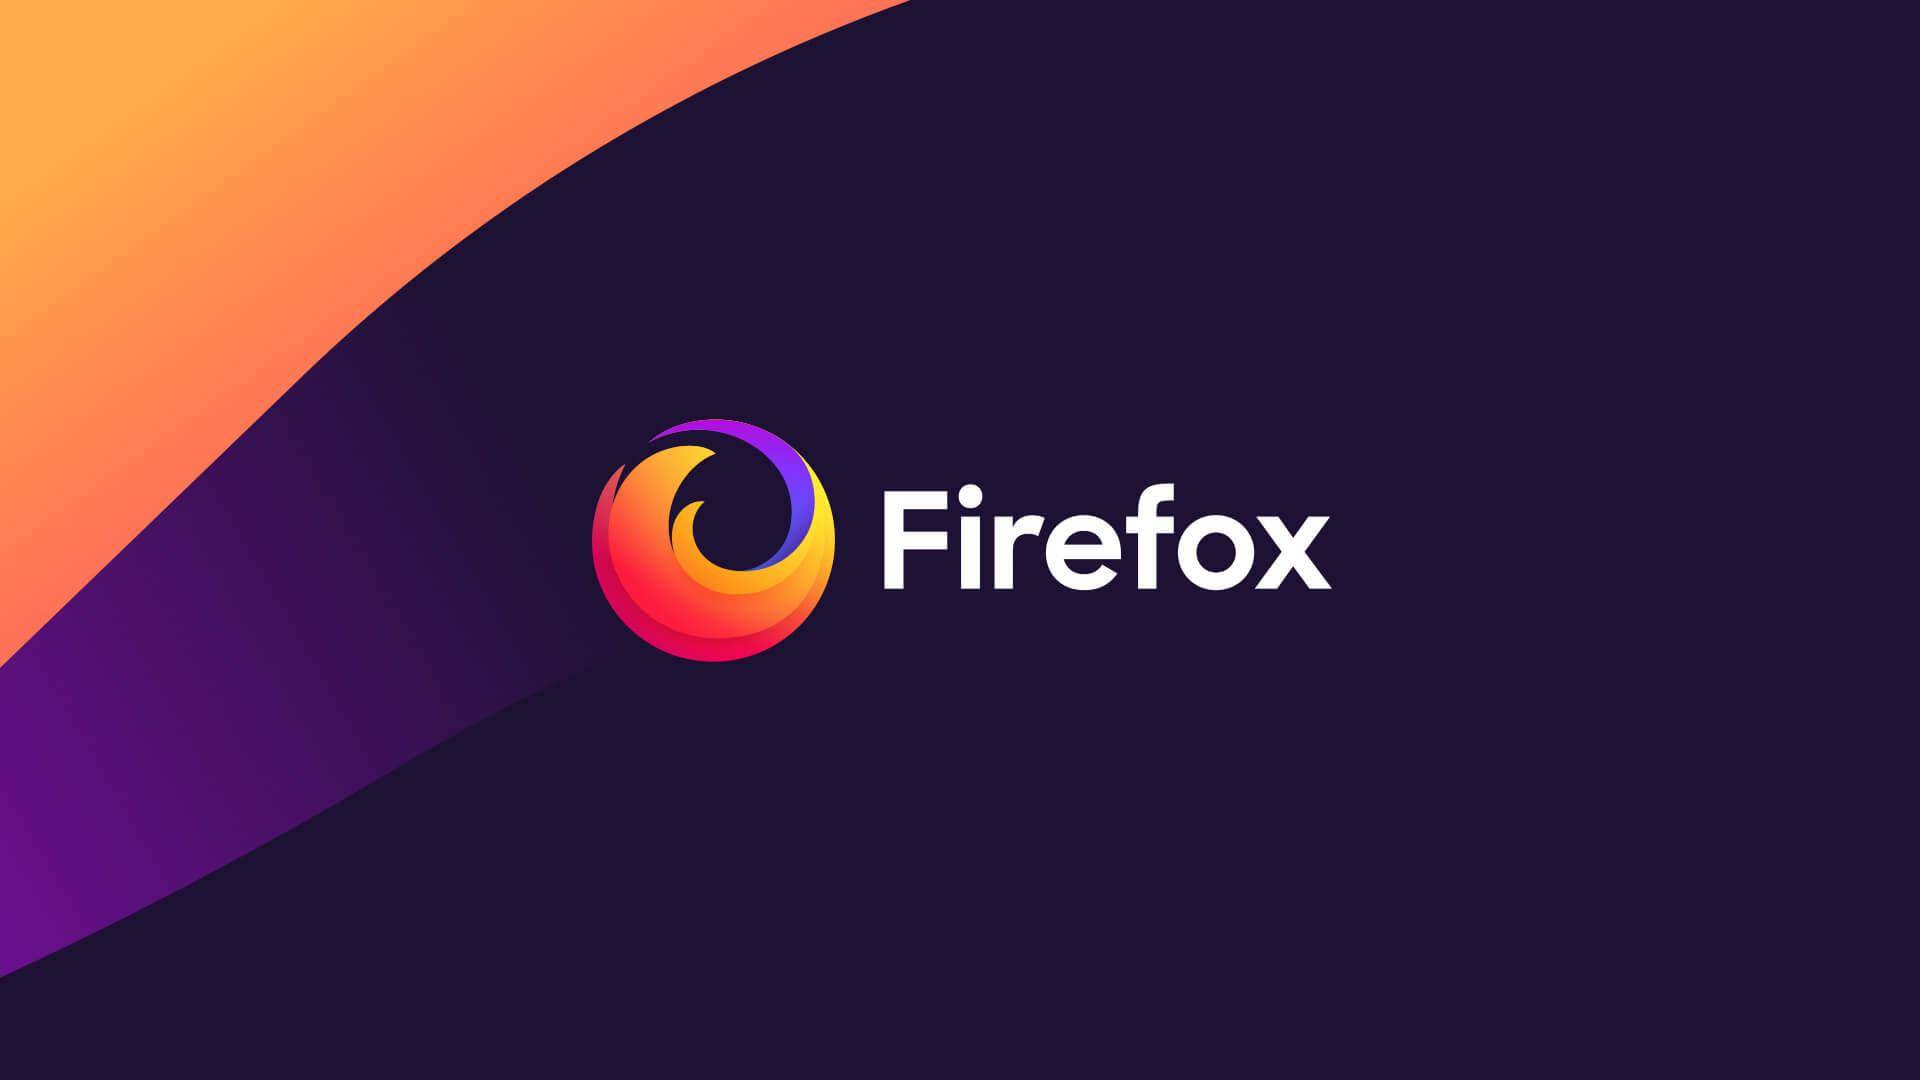 موزيلا تكشف عن ميزات جديدة لمتصفح Firefox